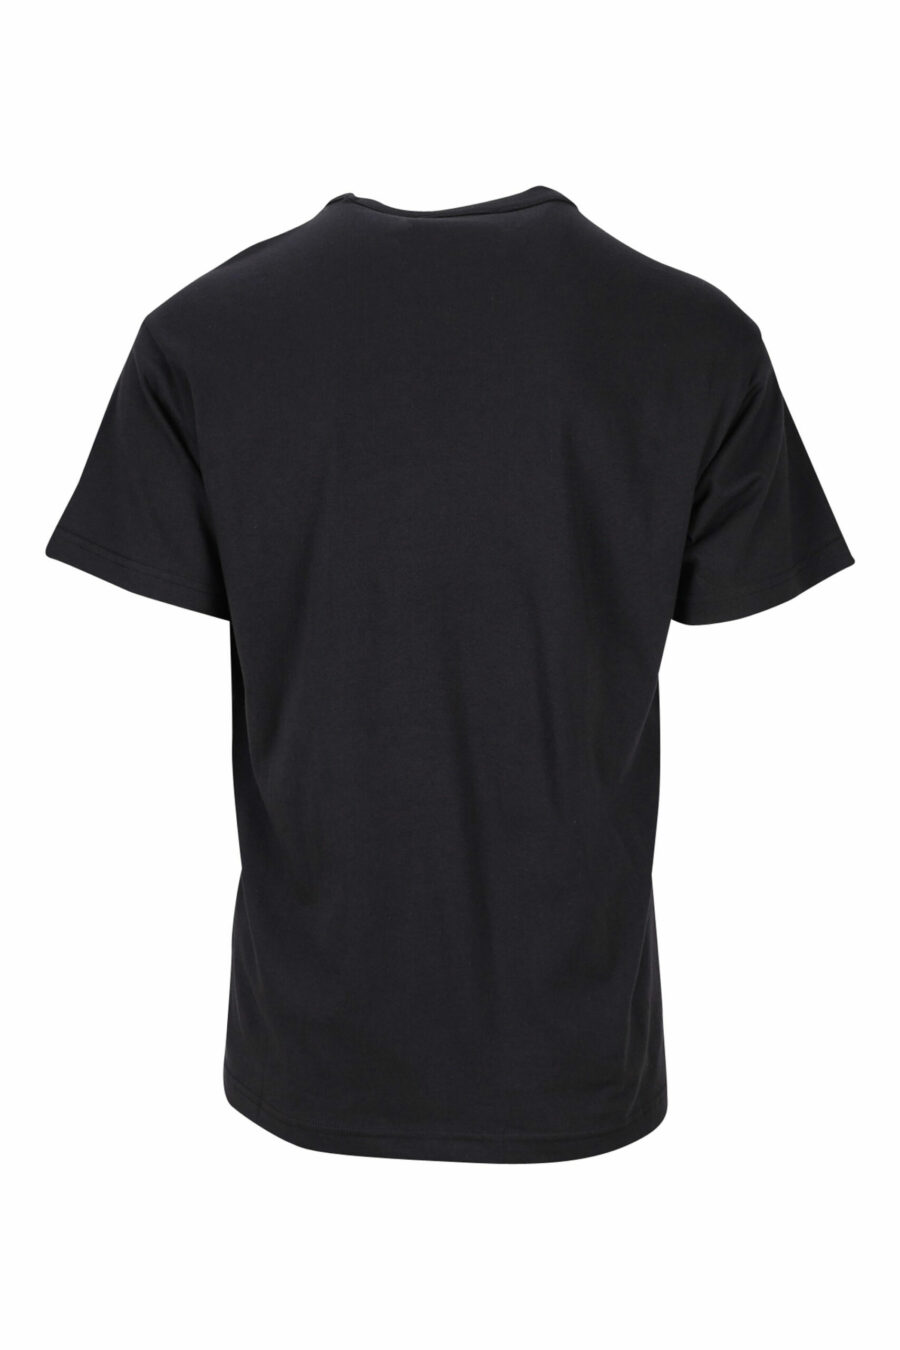 Schwarzes T-Shirt mit einfarbigem Maxilogo "Stückzahl" - 8052019468755 1 skaliert